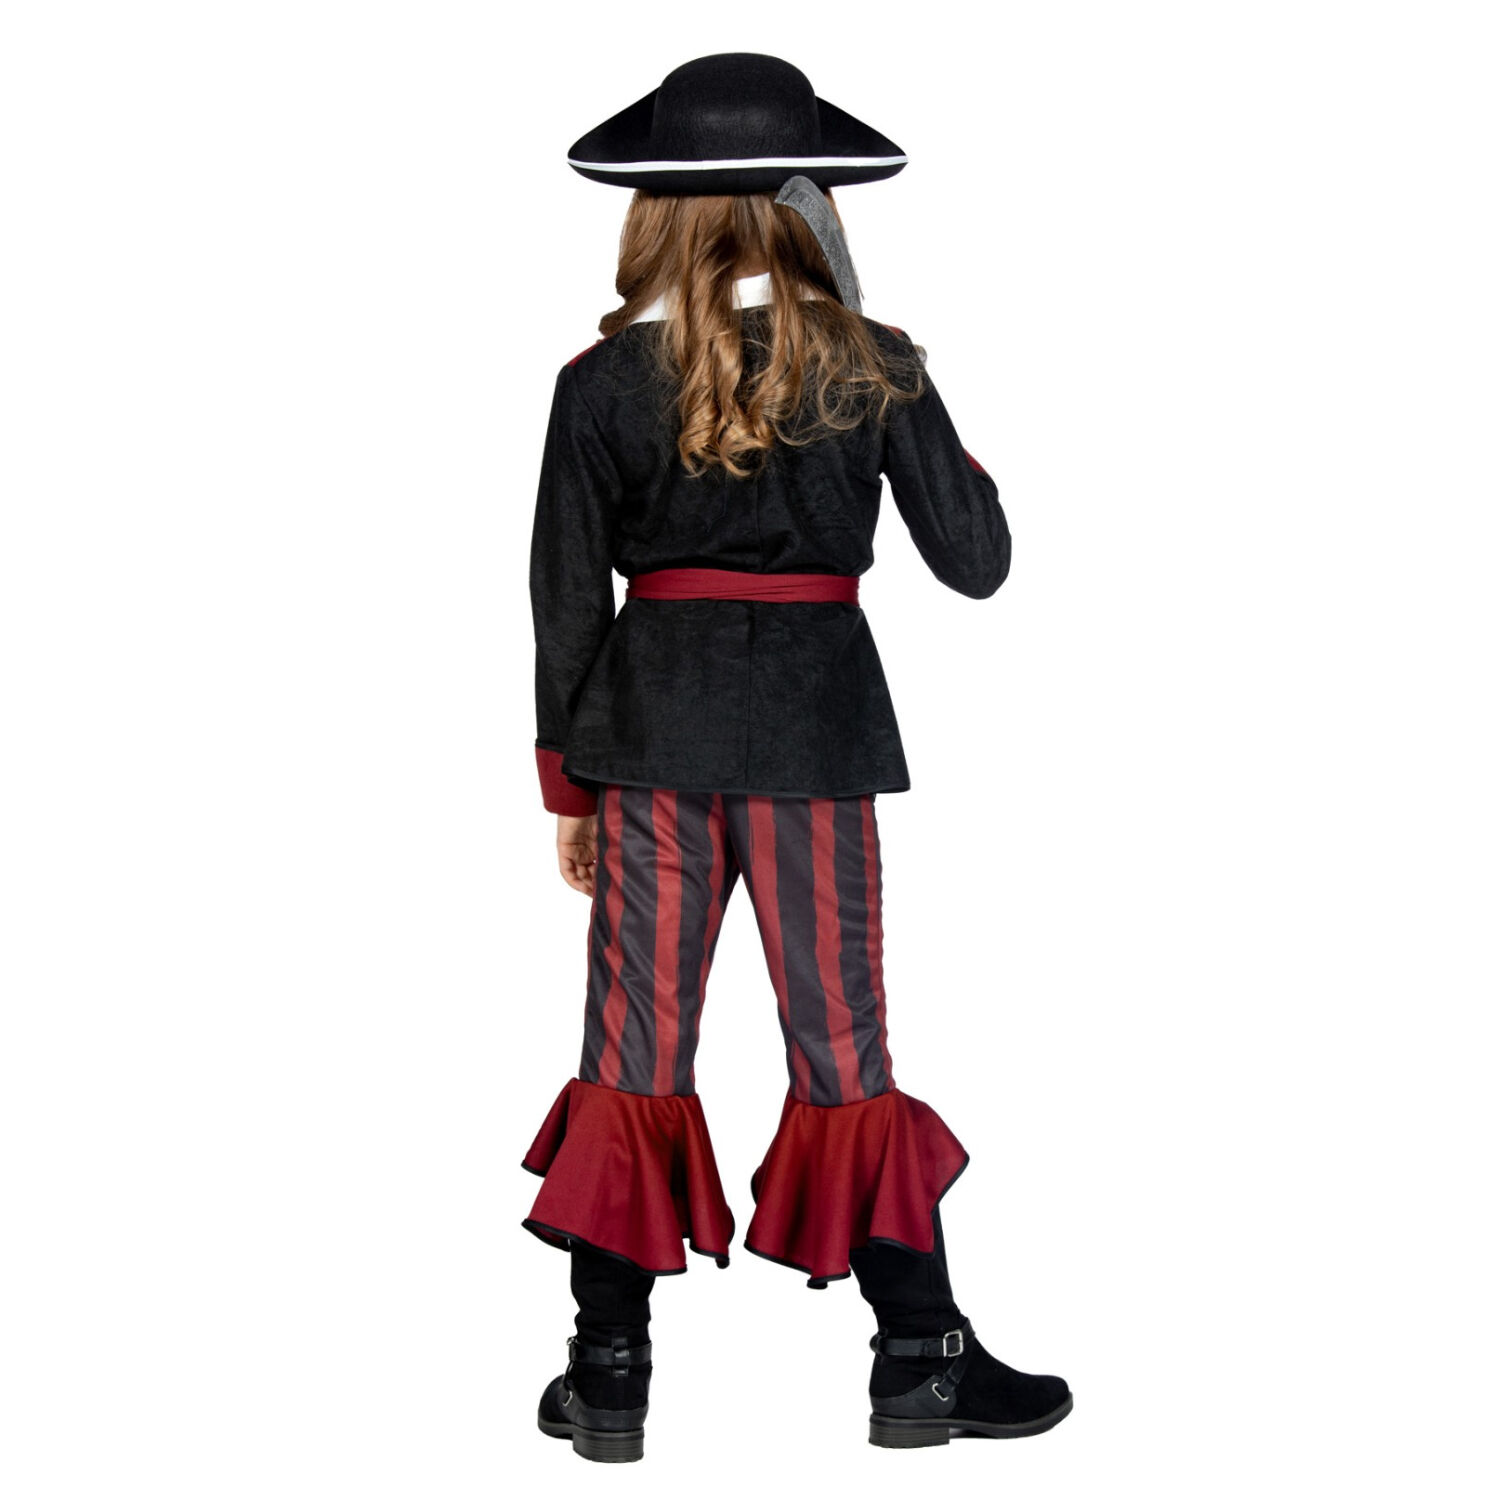 NEU Kinder-Kostm Piratin, 3-tlg. mit Hose, Jacke und Grtel, burgund-schwarz, Gr. 116 Bild 3